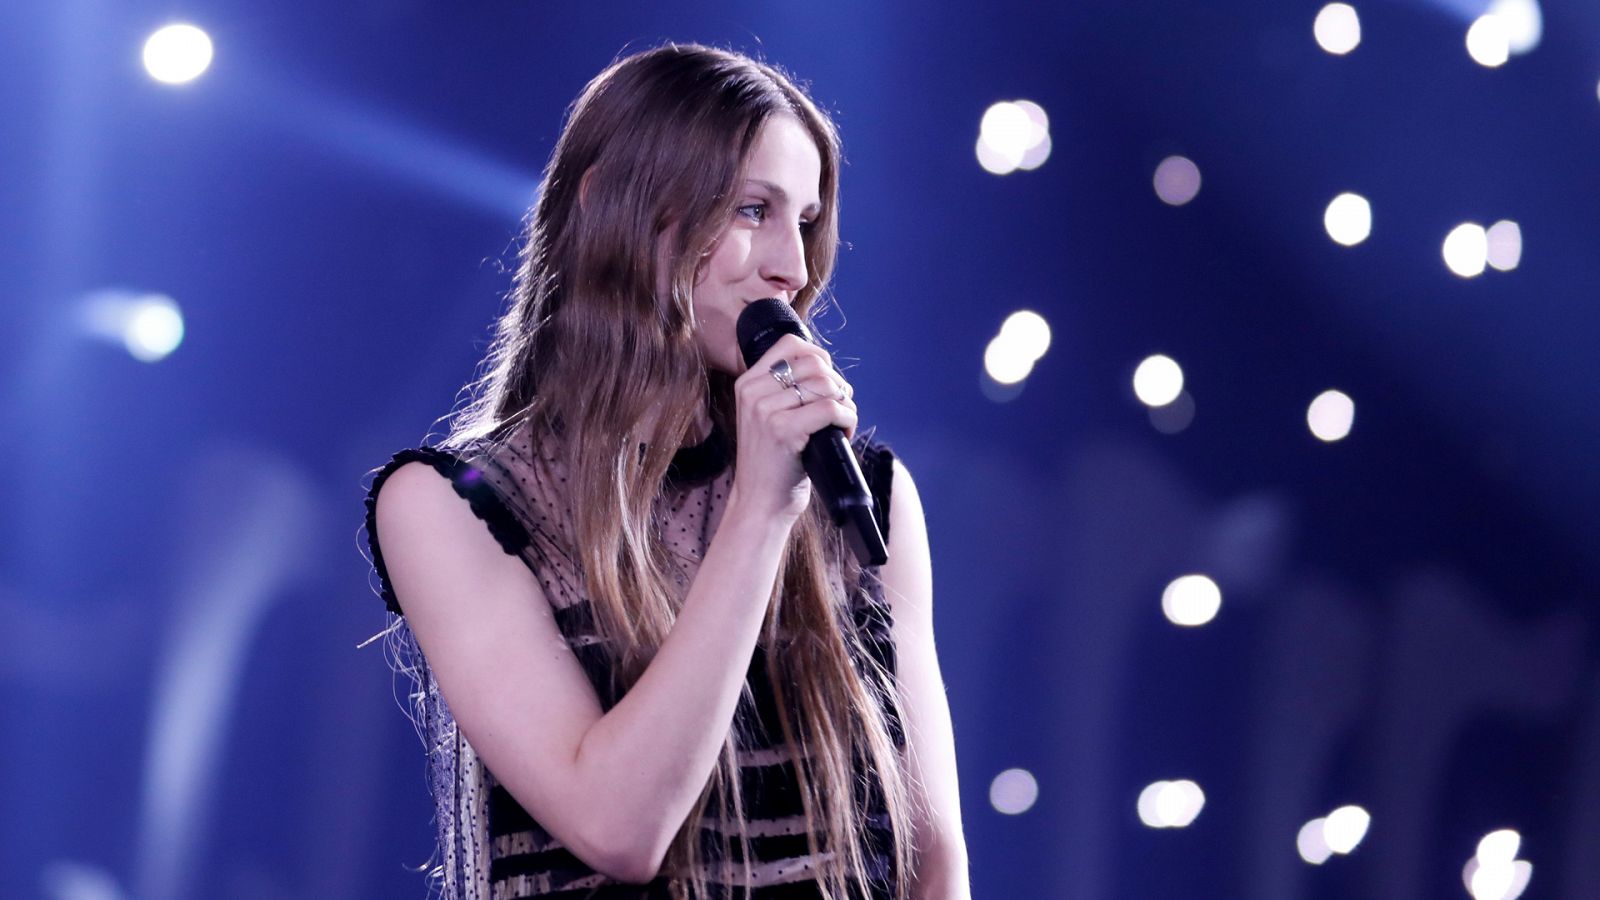 Eurovisión - Bélgica: Sennek canta "A matter of time" - Primera Semifinal 